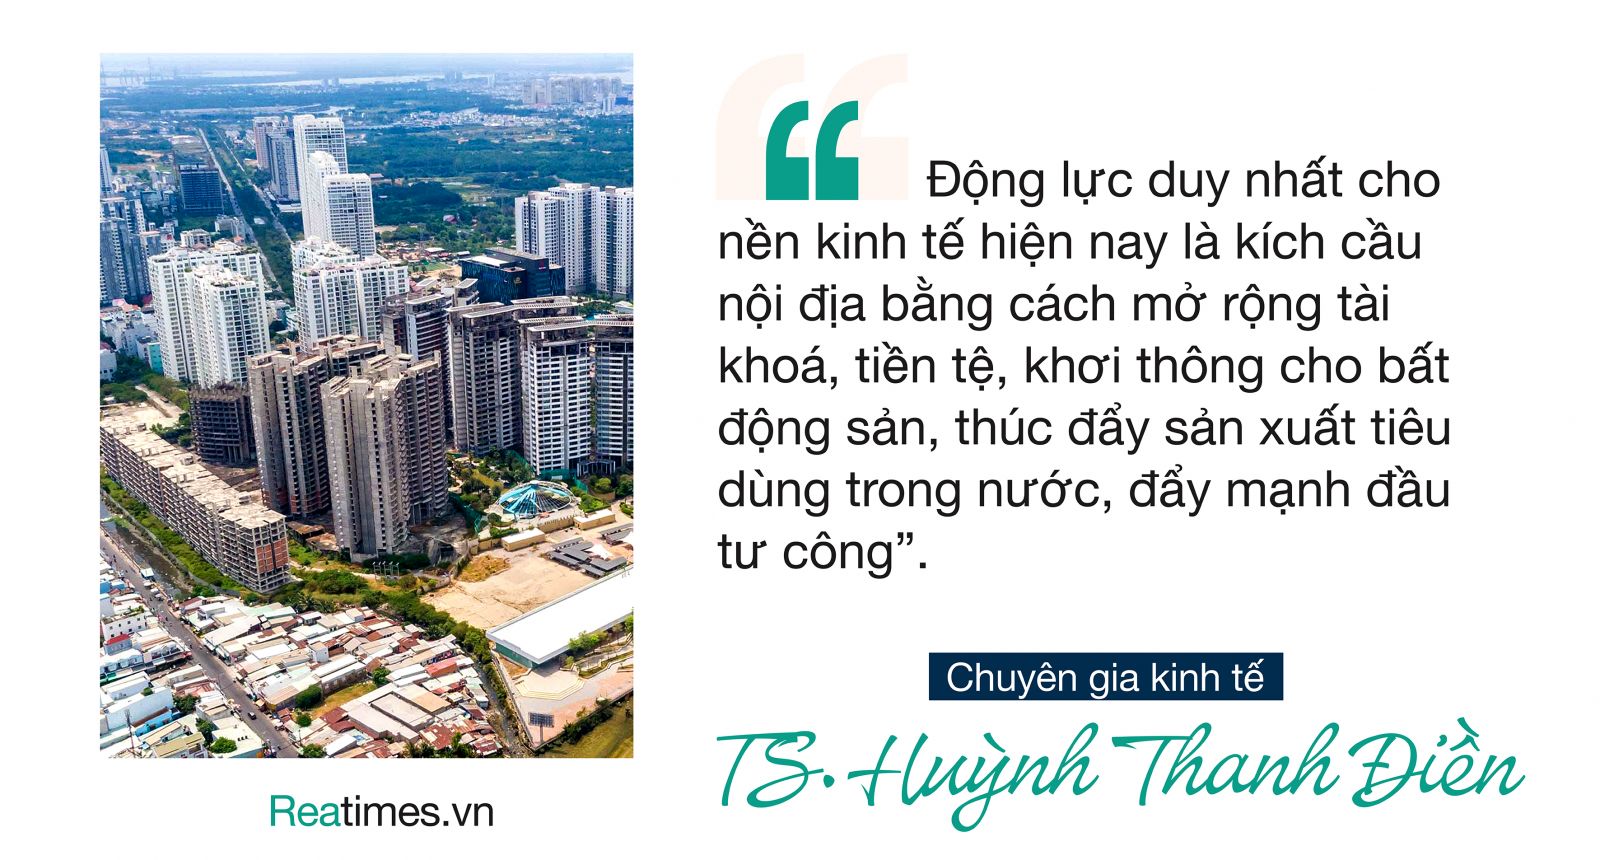 Vực dậy bất động sản, kinh tế phục hồi, TS Huỳnh Thanh Điền